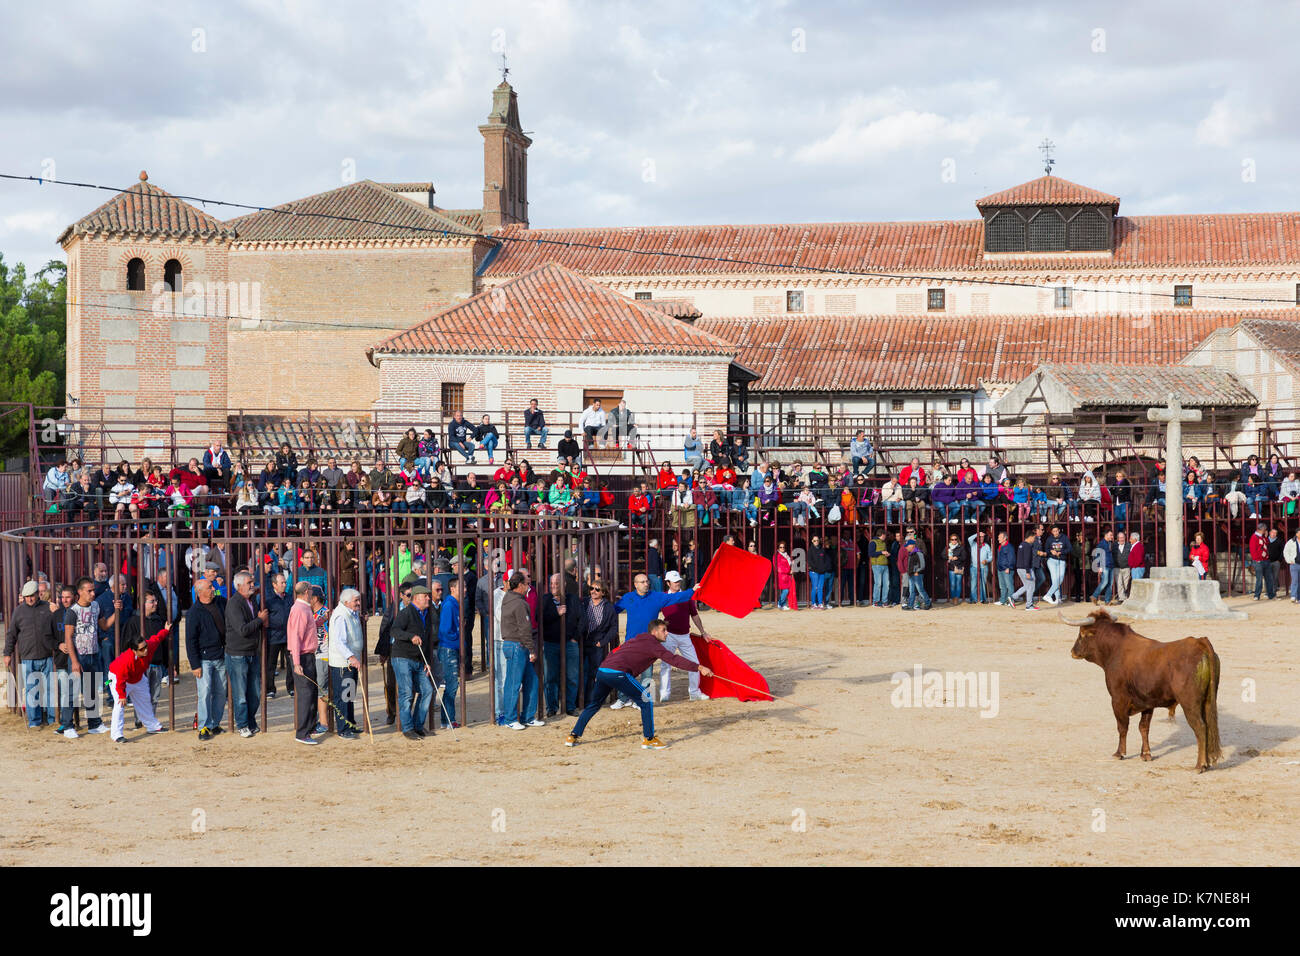 La population locale difficile bull avec drapeau rouge pendant le festival traditionnel à madrigal de los altas torres dans la province d'Avila, Espagne Banque D'Images